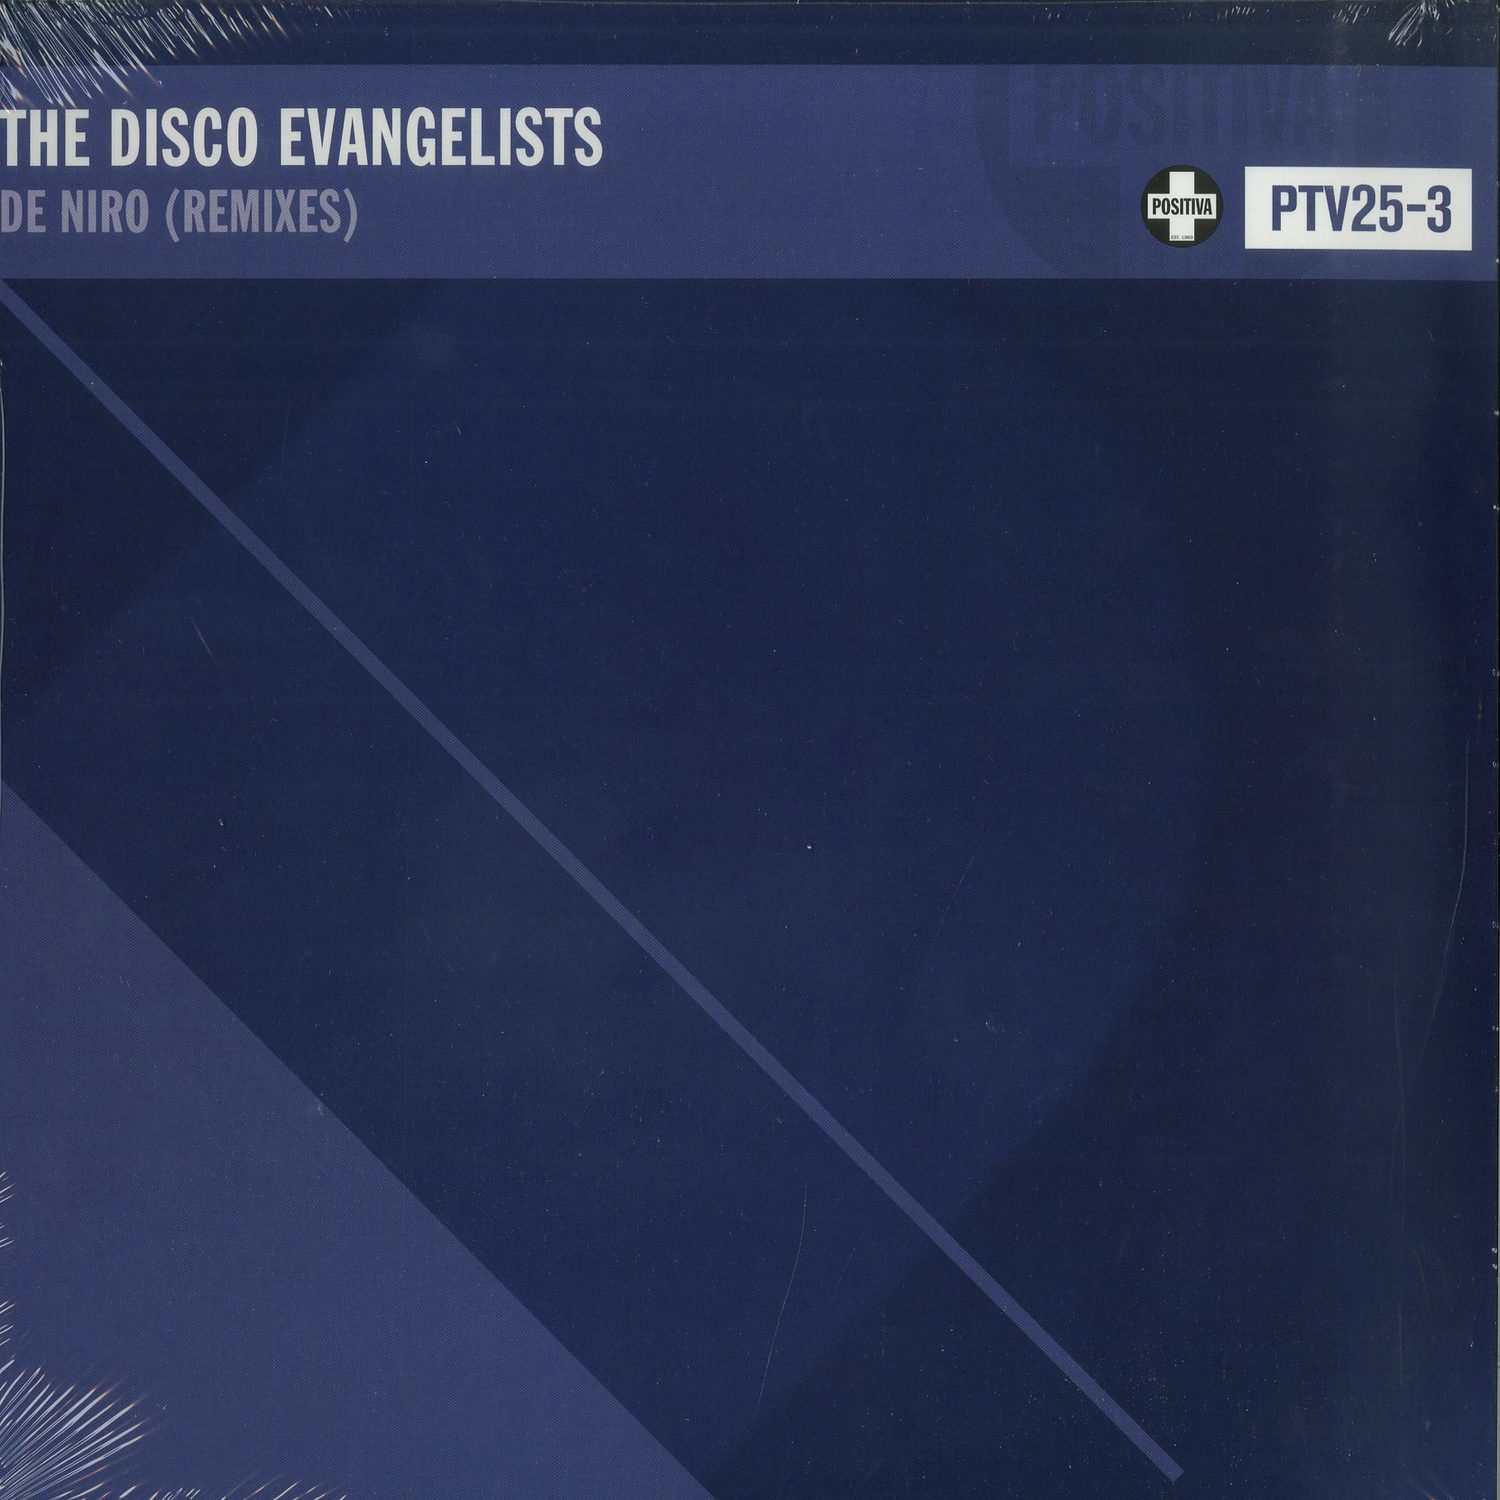 The Disco Evangelists - DE NIRO 